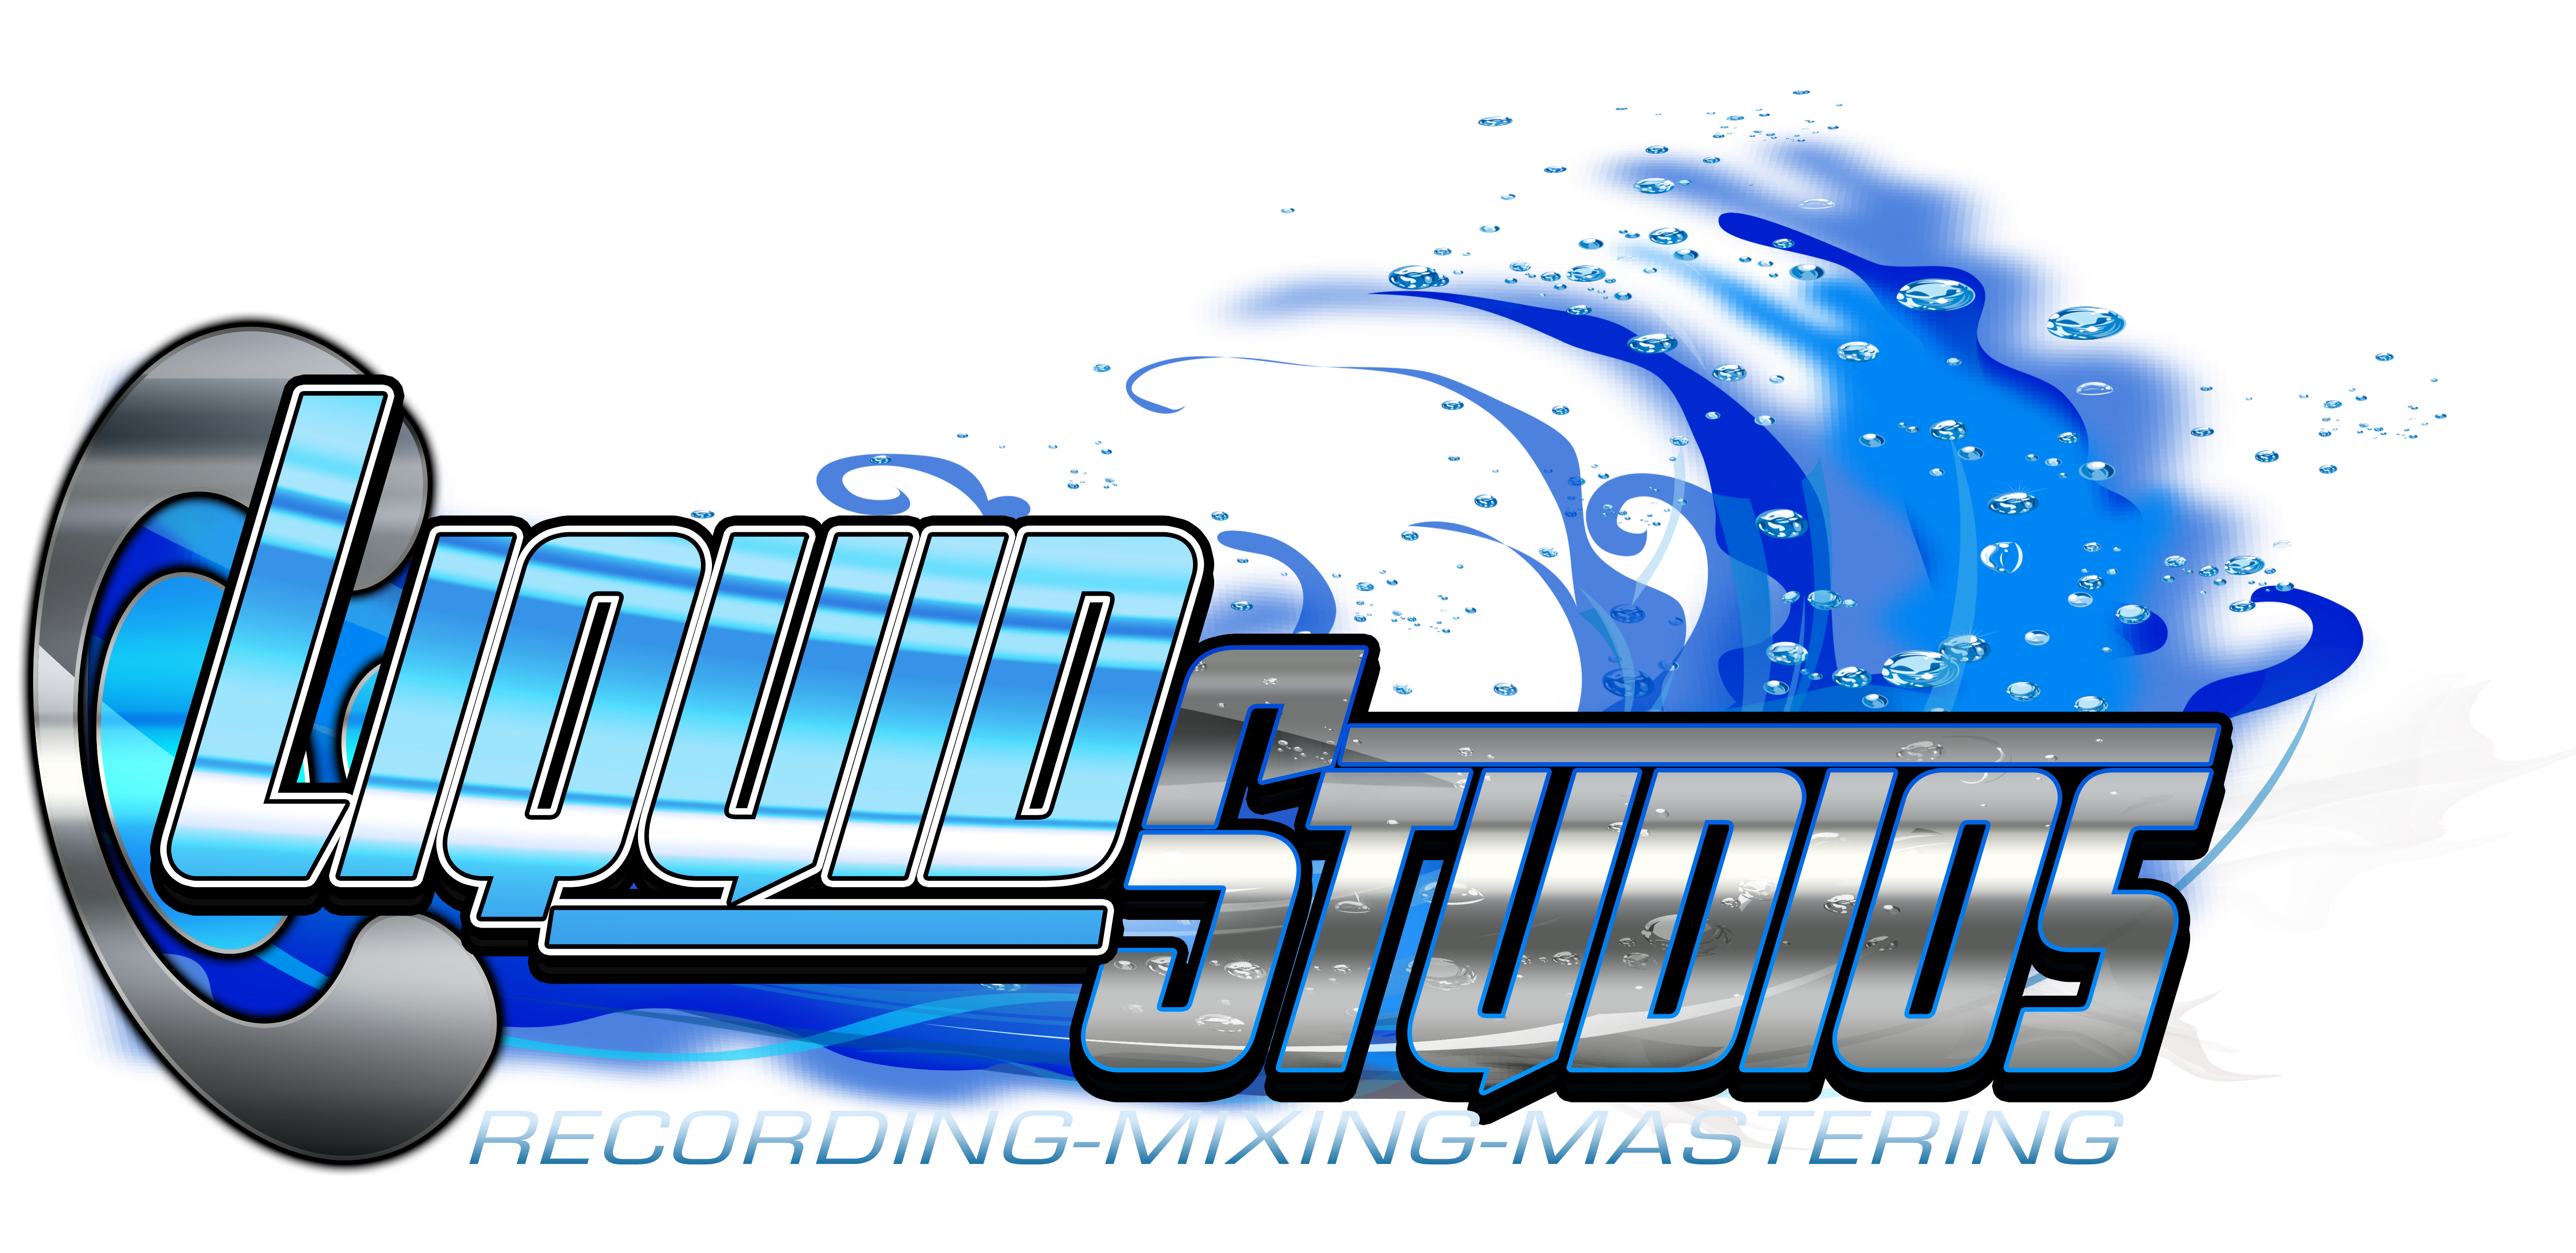 Liquid Studios Logo